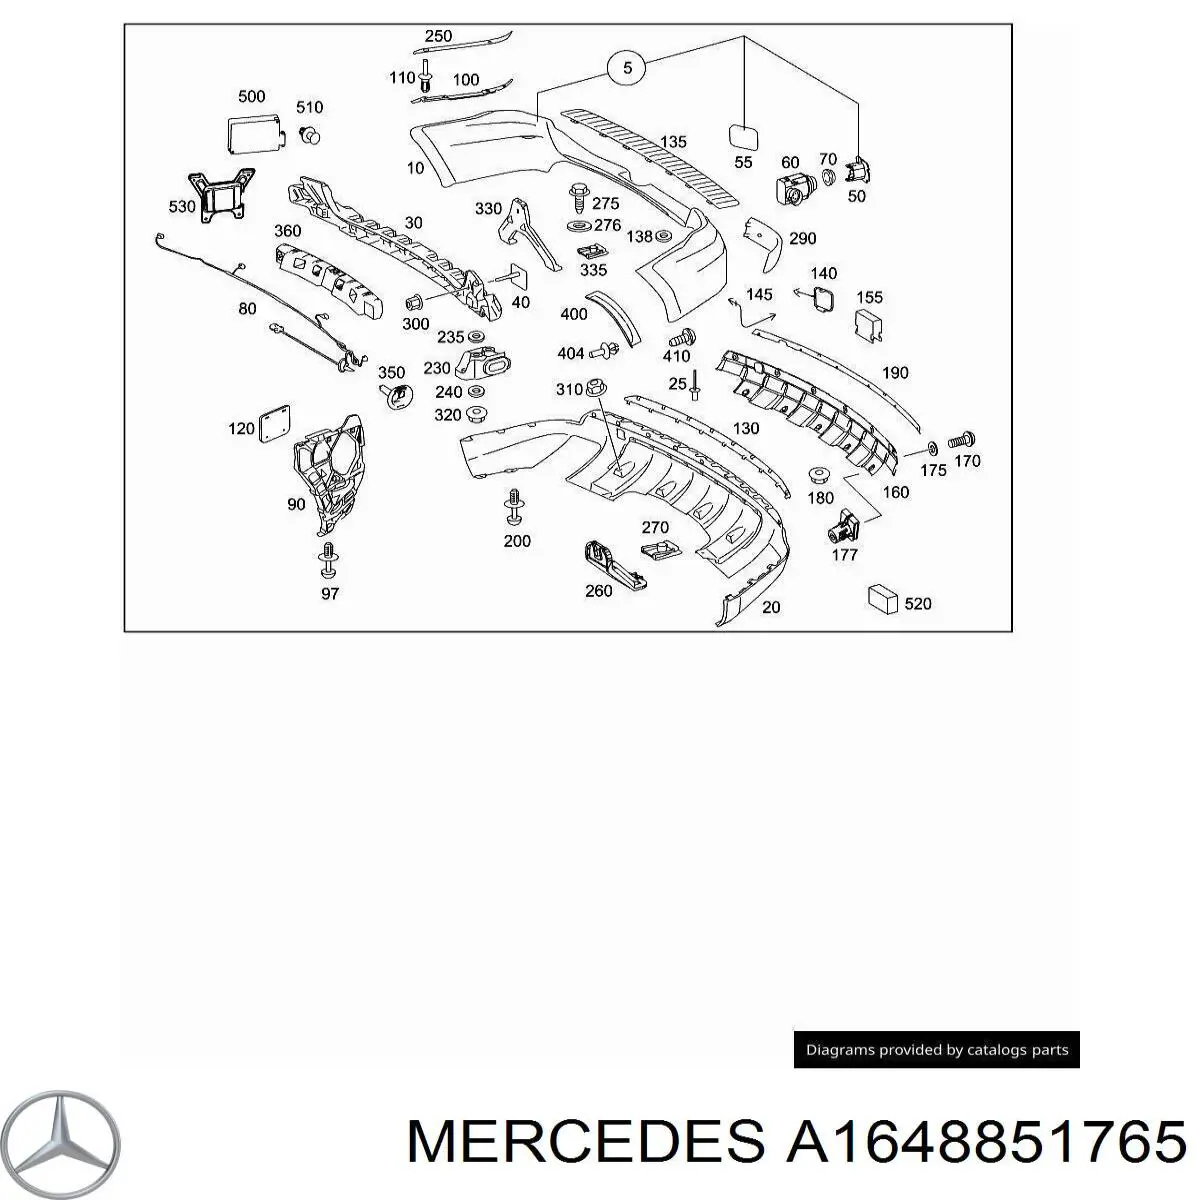 Soporte de parachoques trasero central para Mercedes ML/GLE (W164)